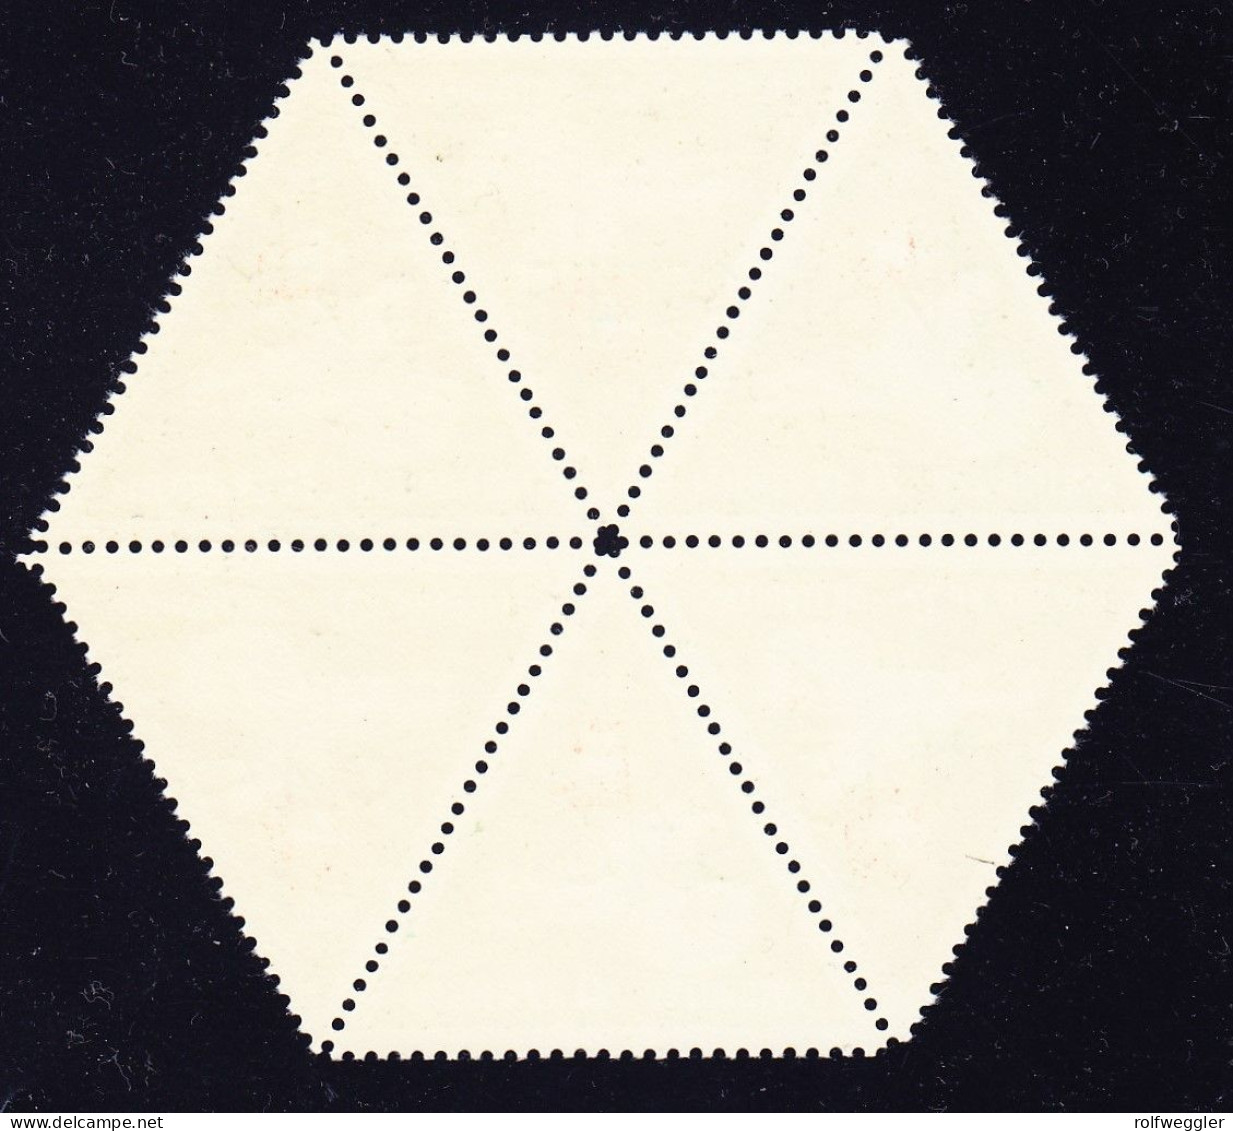 1940/1945 Flieger Kompanie 17 Mit Aufdruck 1945. Dreiecksmarke, Postfrisch Im 6er Block (Kehrdrucke) Auerhahn. - Vignetten